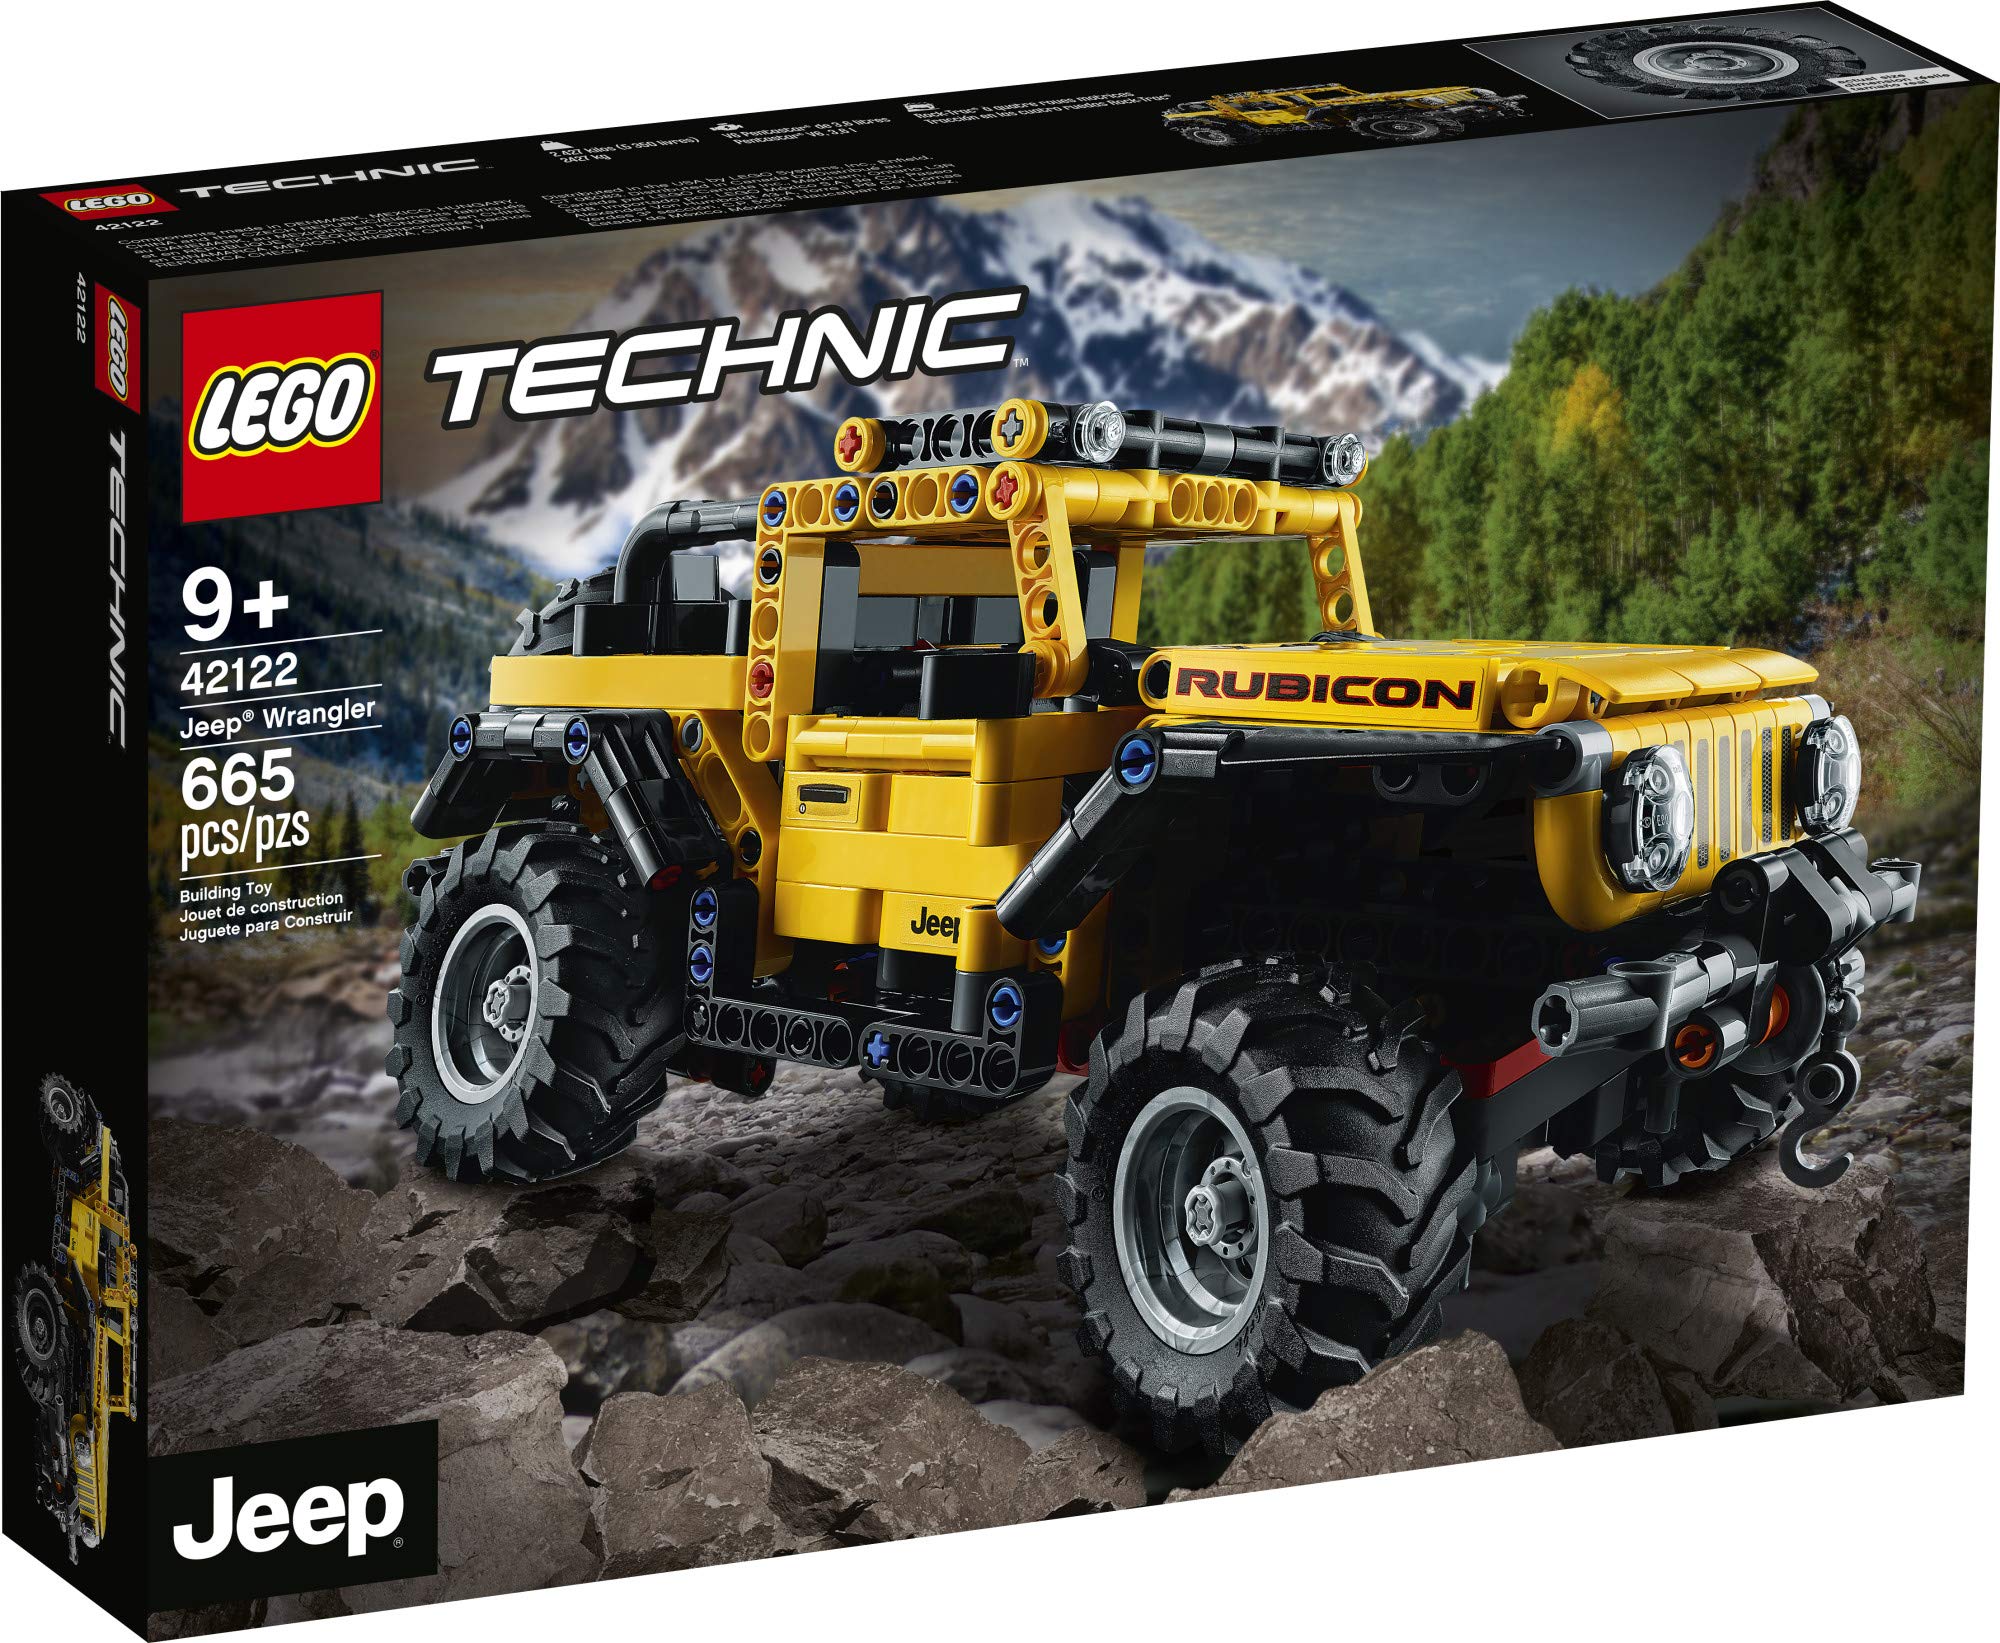 Actualizar 75+ imagen jeep lego wrangler